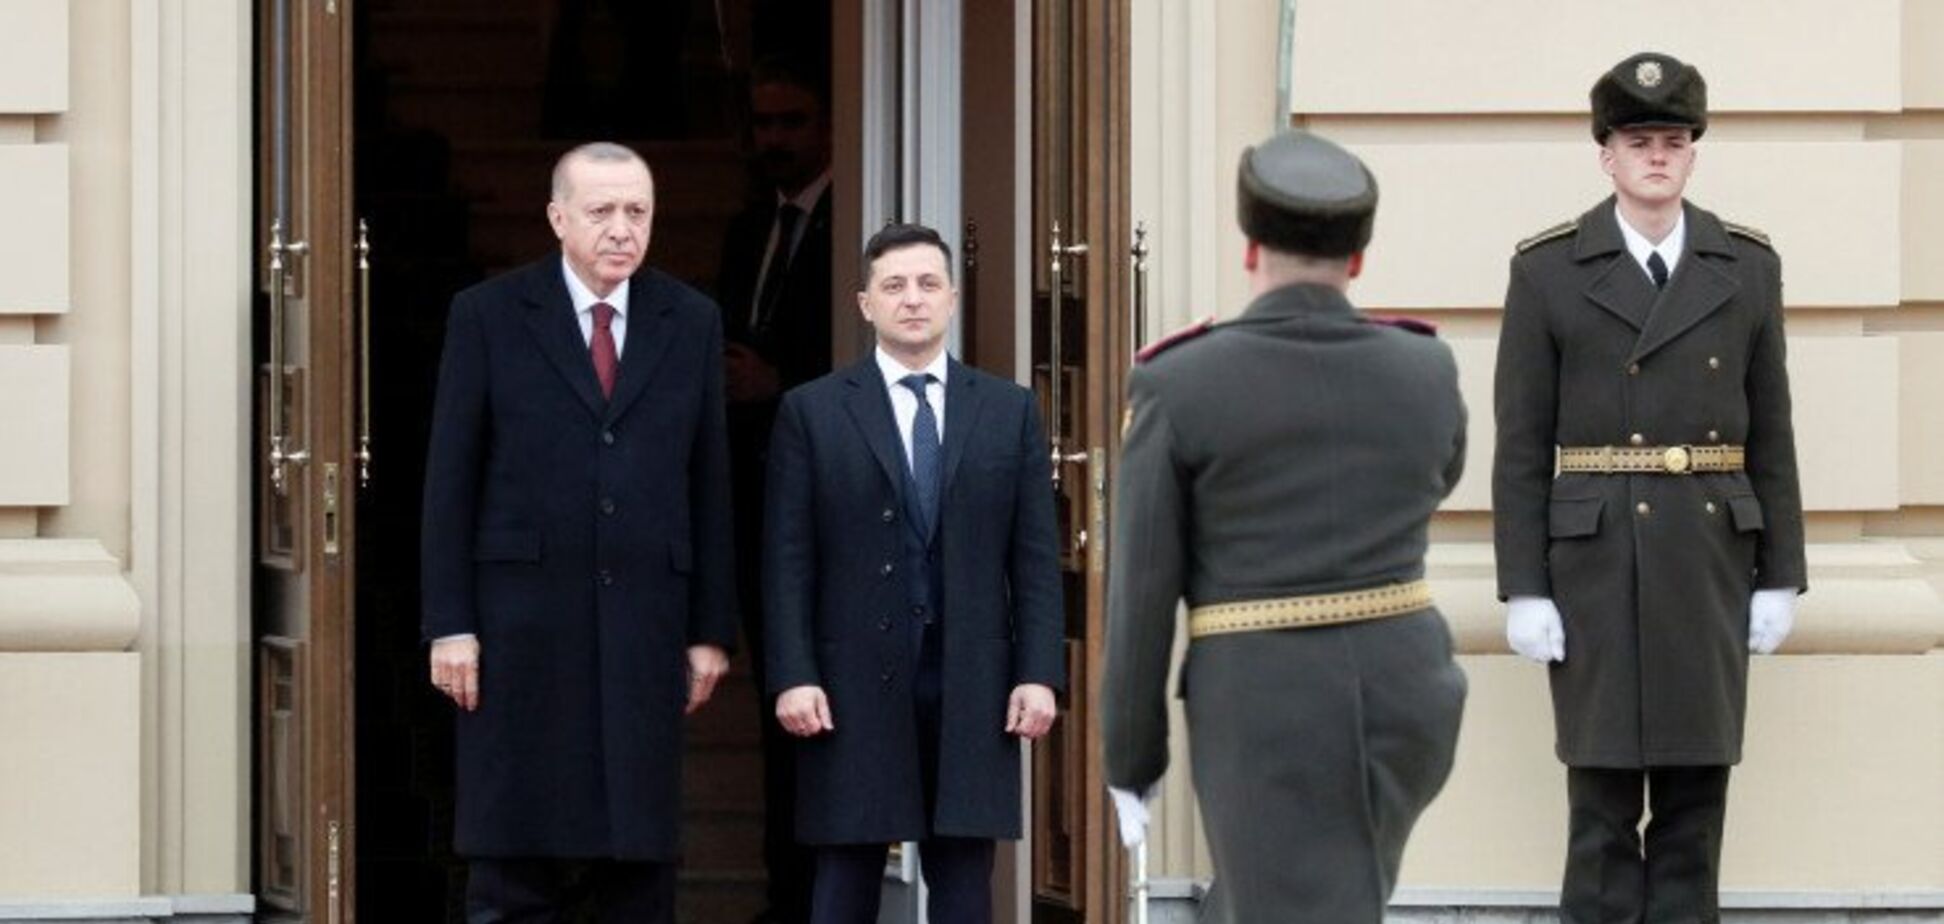 Ердоган привітали стрій почесної варти словами 'Слава Україні'